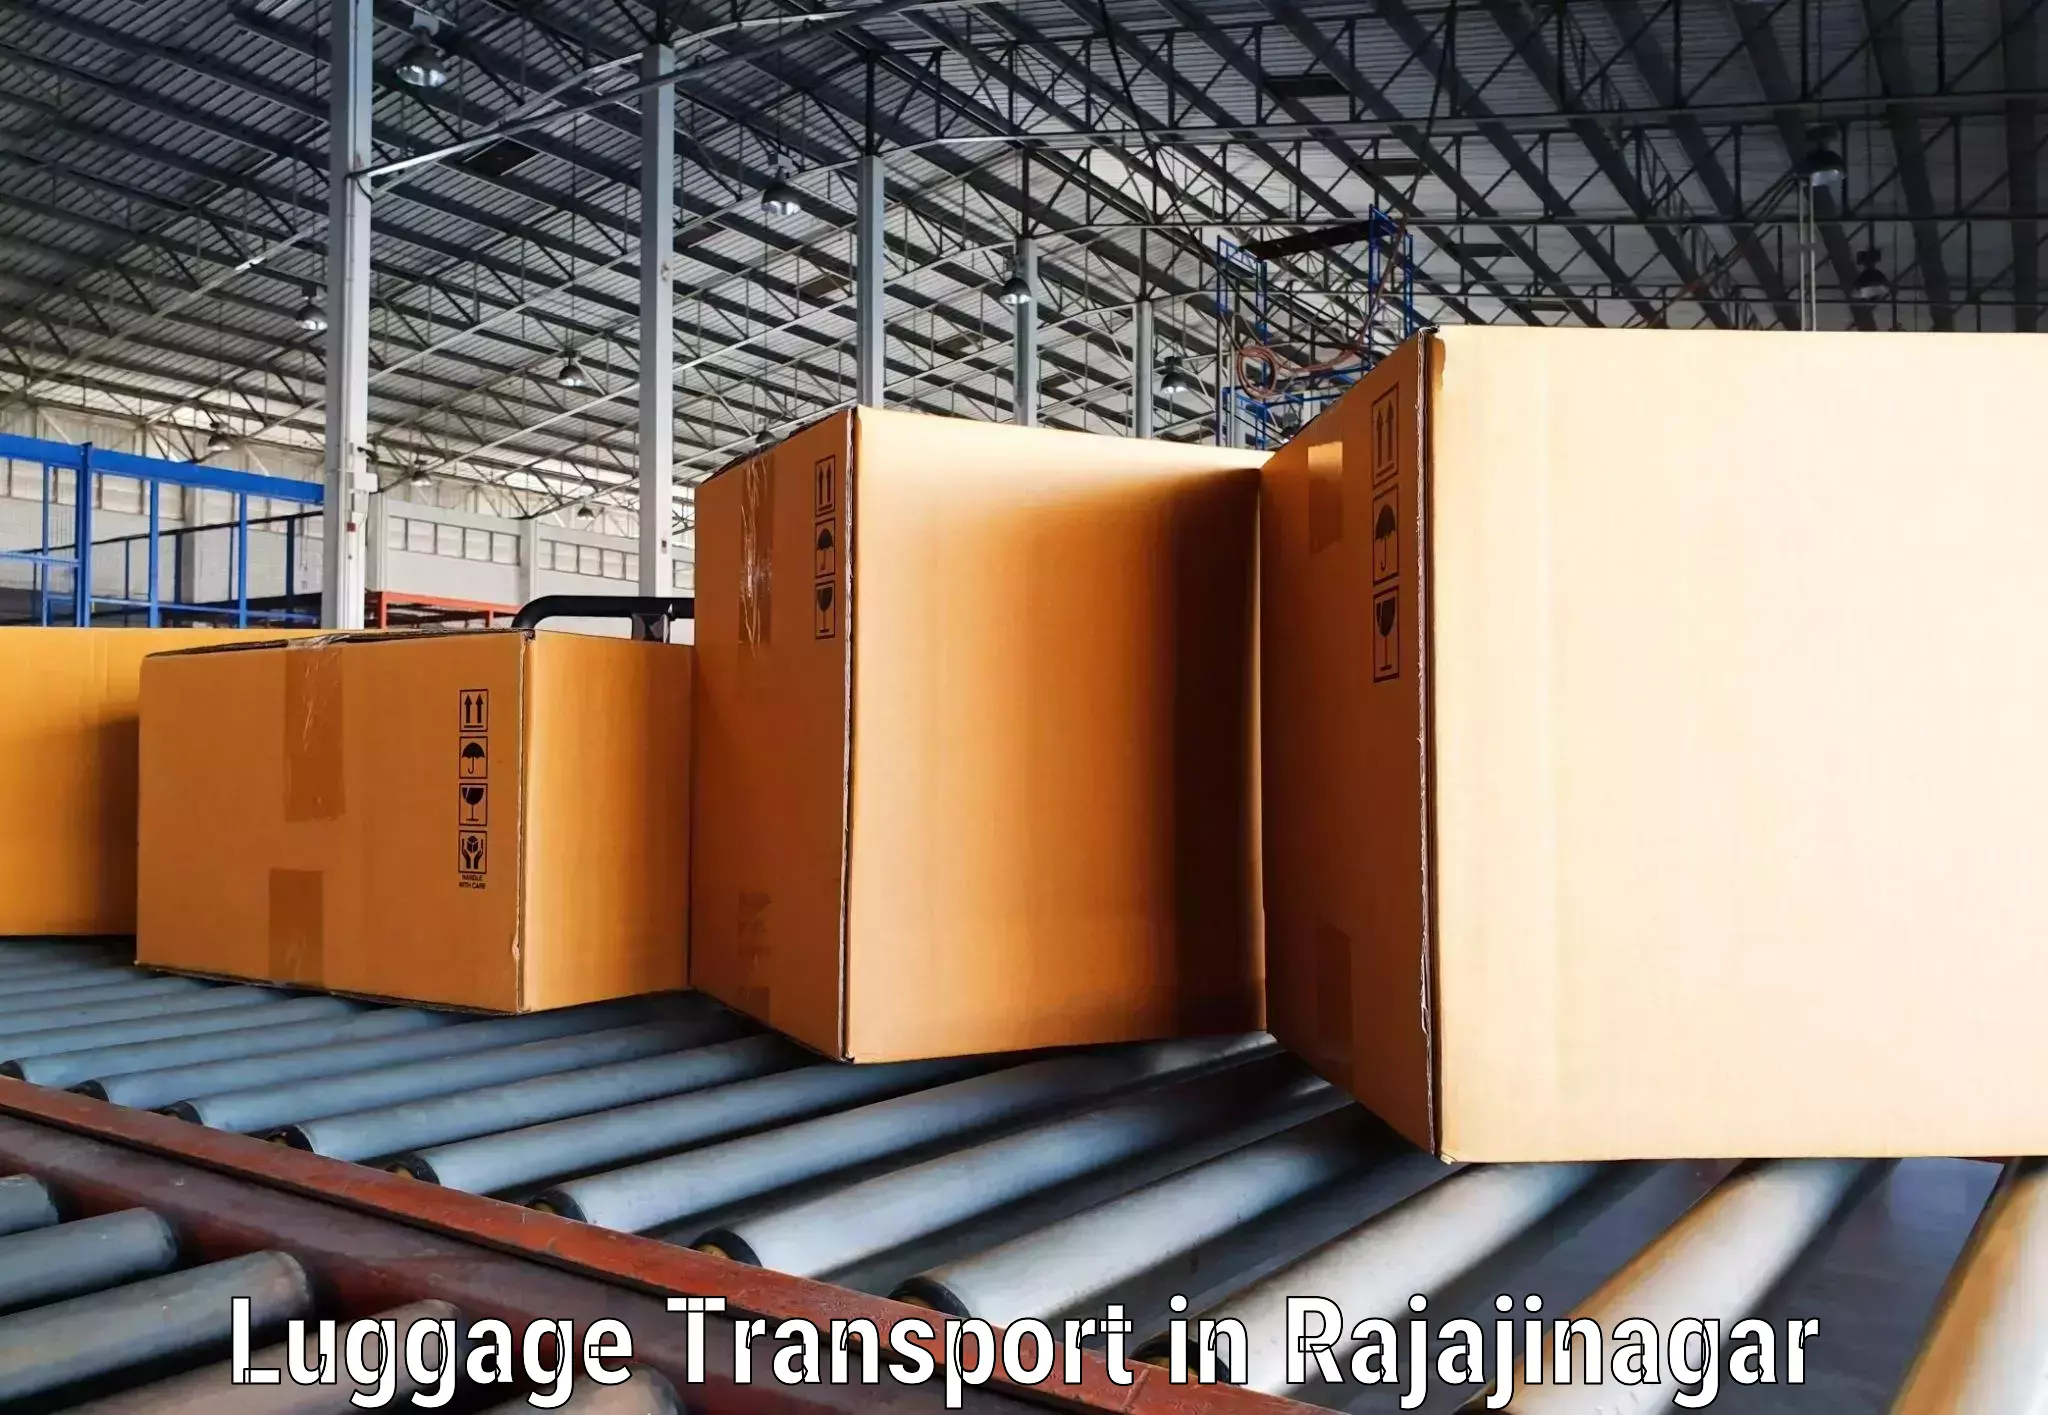 Baggage transport network in Rajajinagar